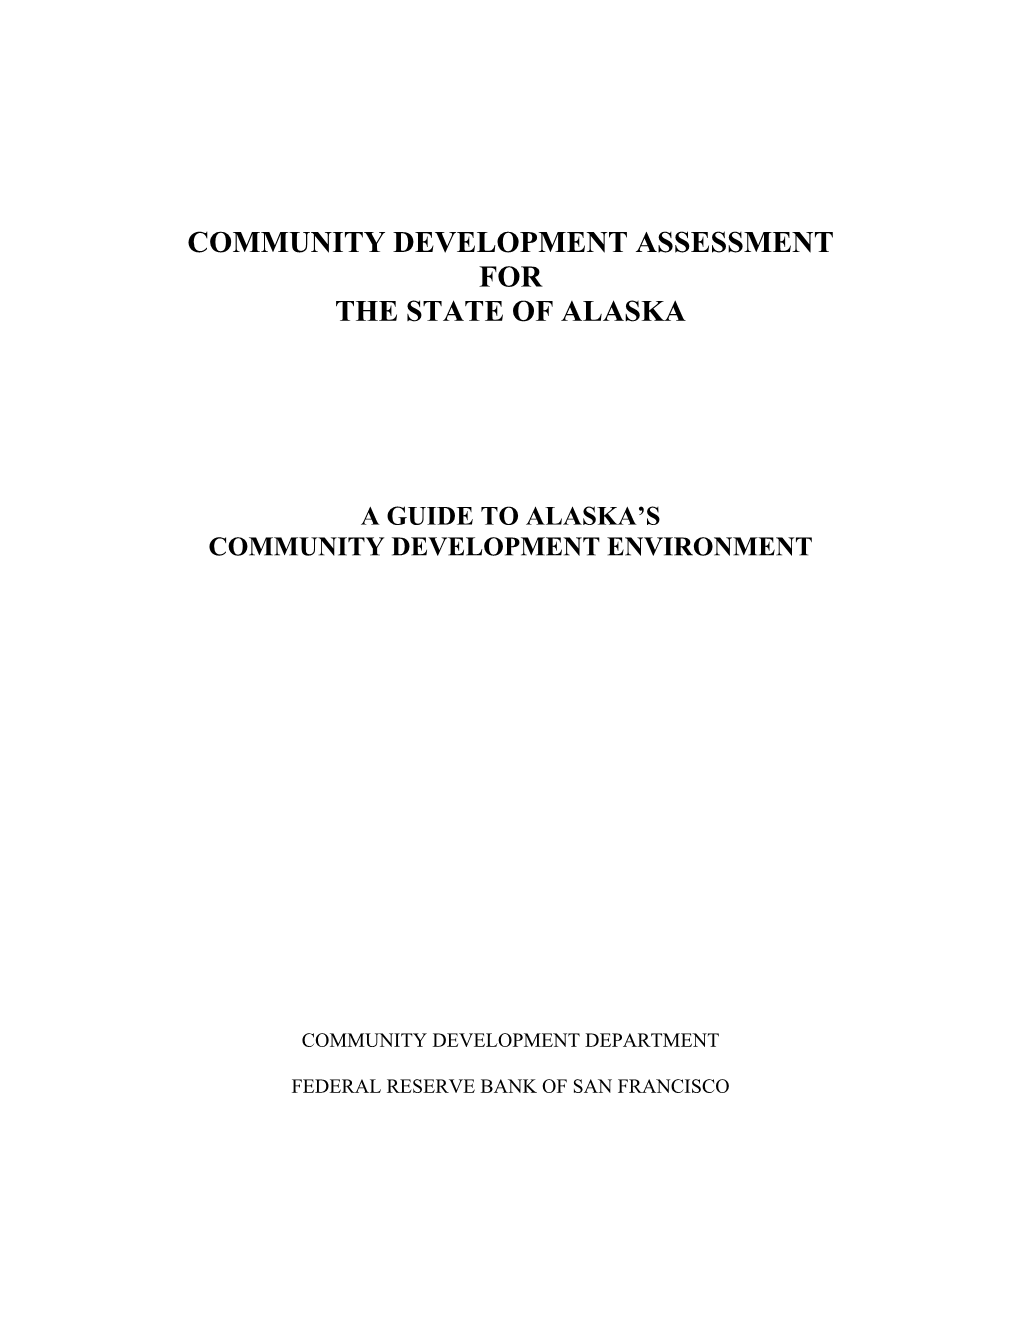 Community Development Assessment for the State of Alaska